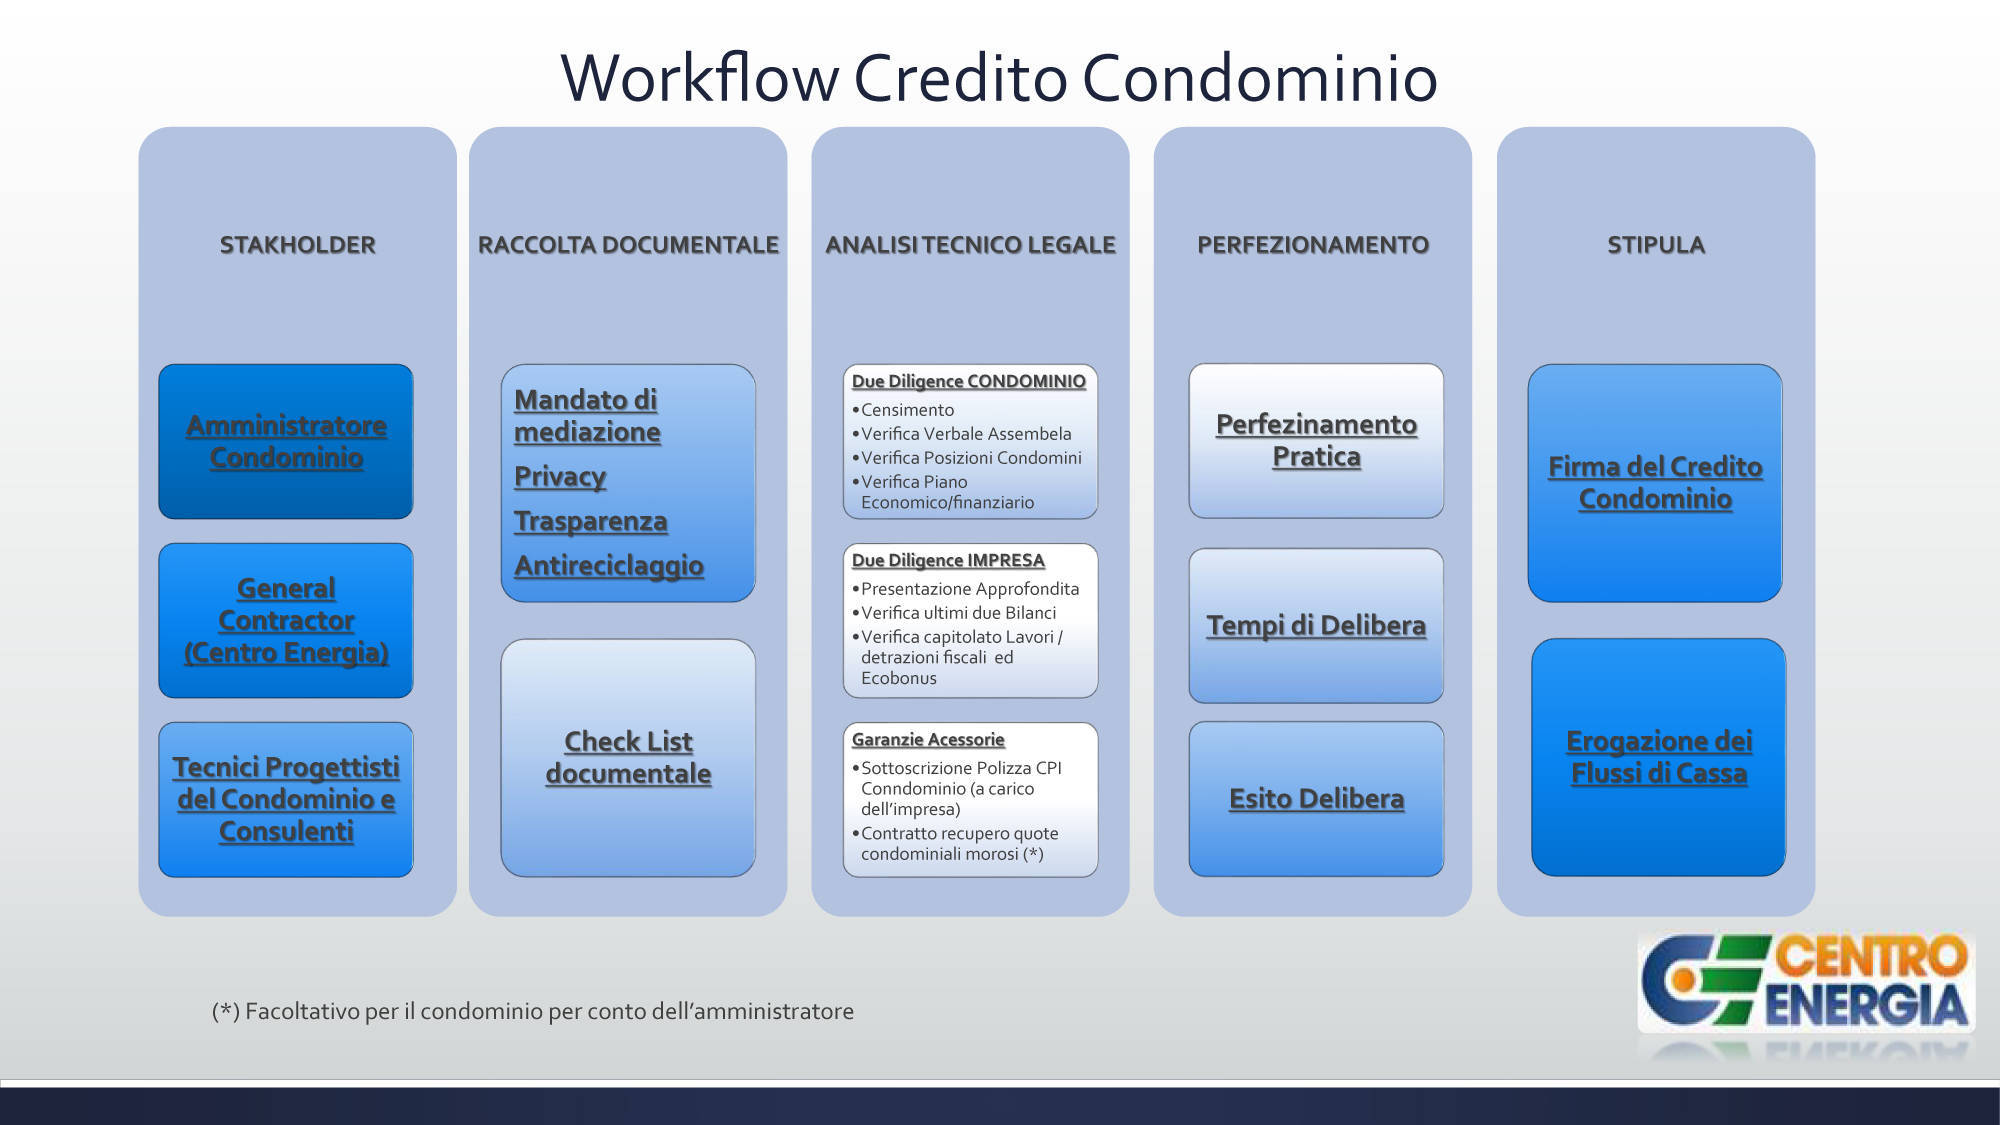 Credito-Condominio-Workflow_Hq